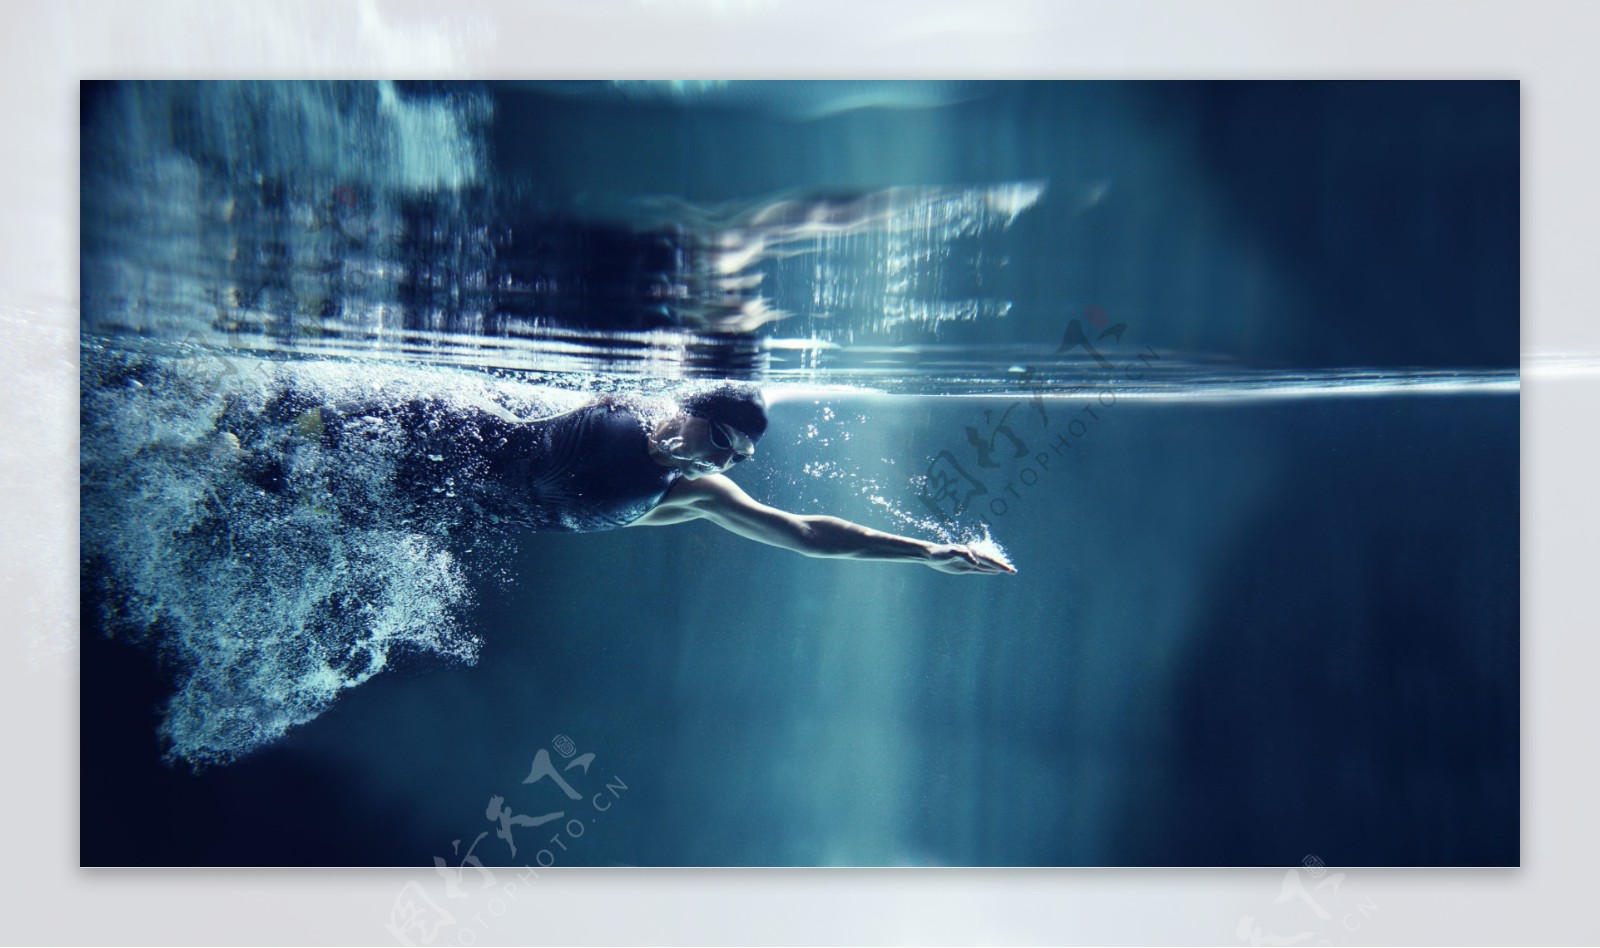 游泳潜水的运动员图片